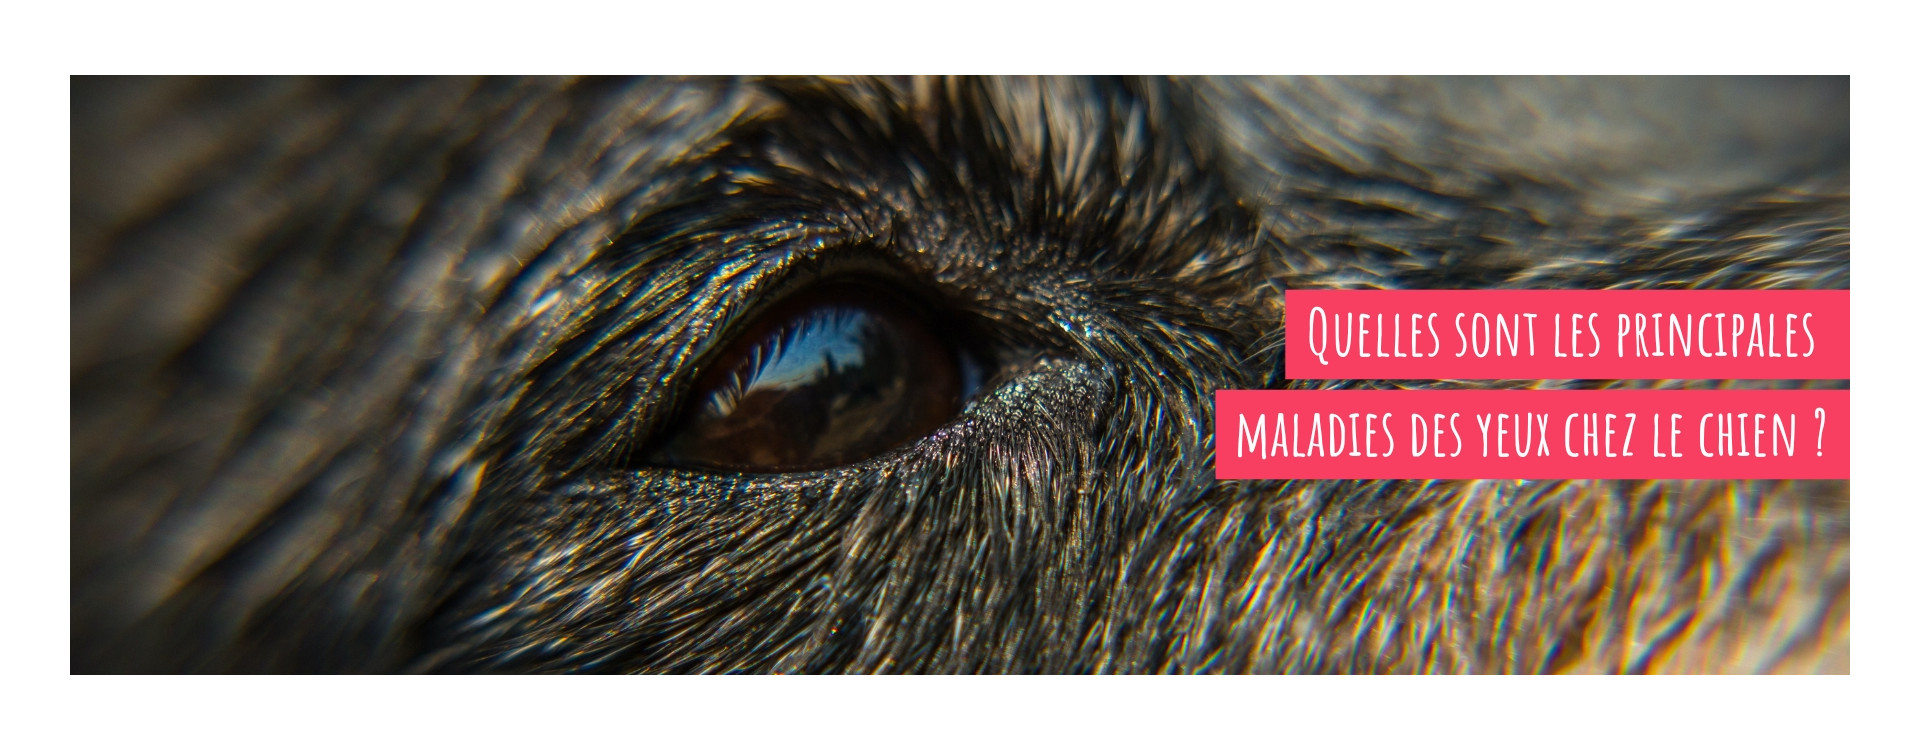 Quelles sont les principales maladies des yeux chez le chien ?